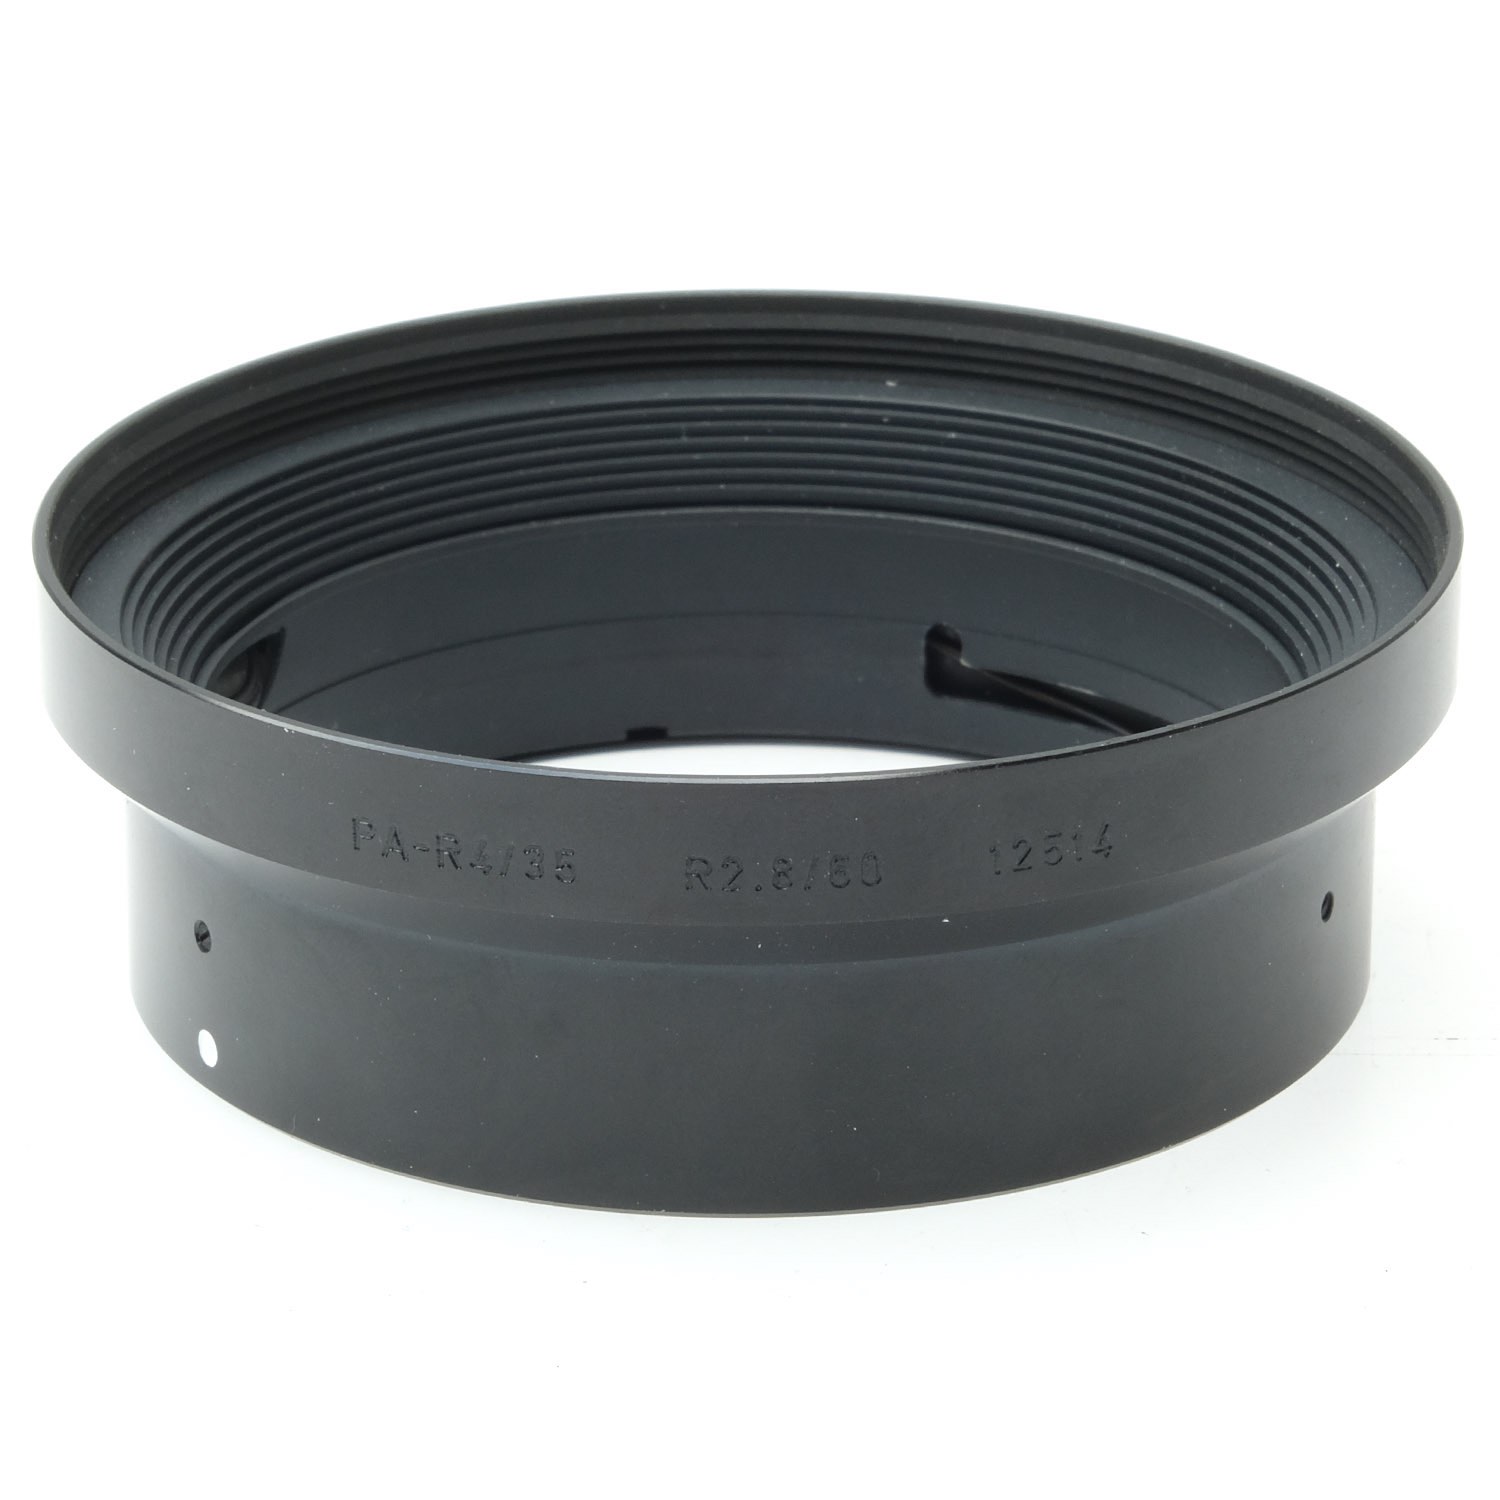 Leica Shade 12514 60 Macro, 35 PA Curtagon, Boxed (9+)